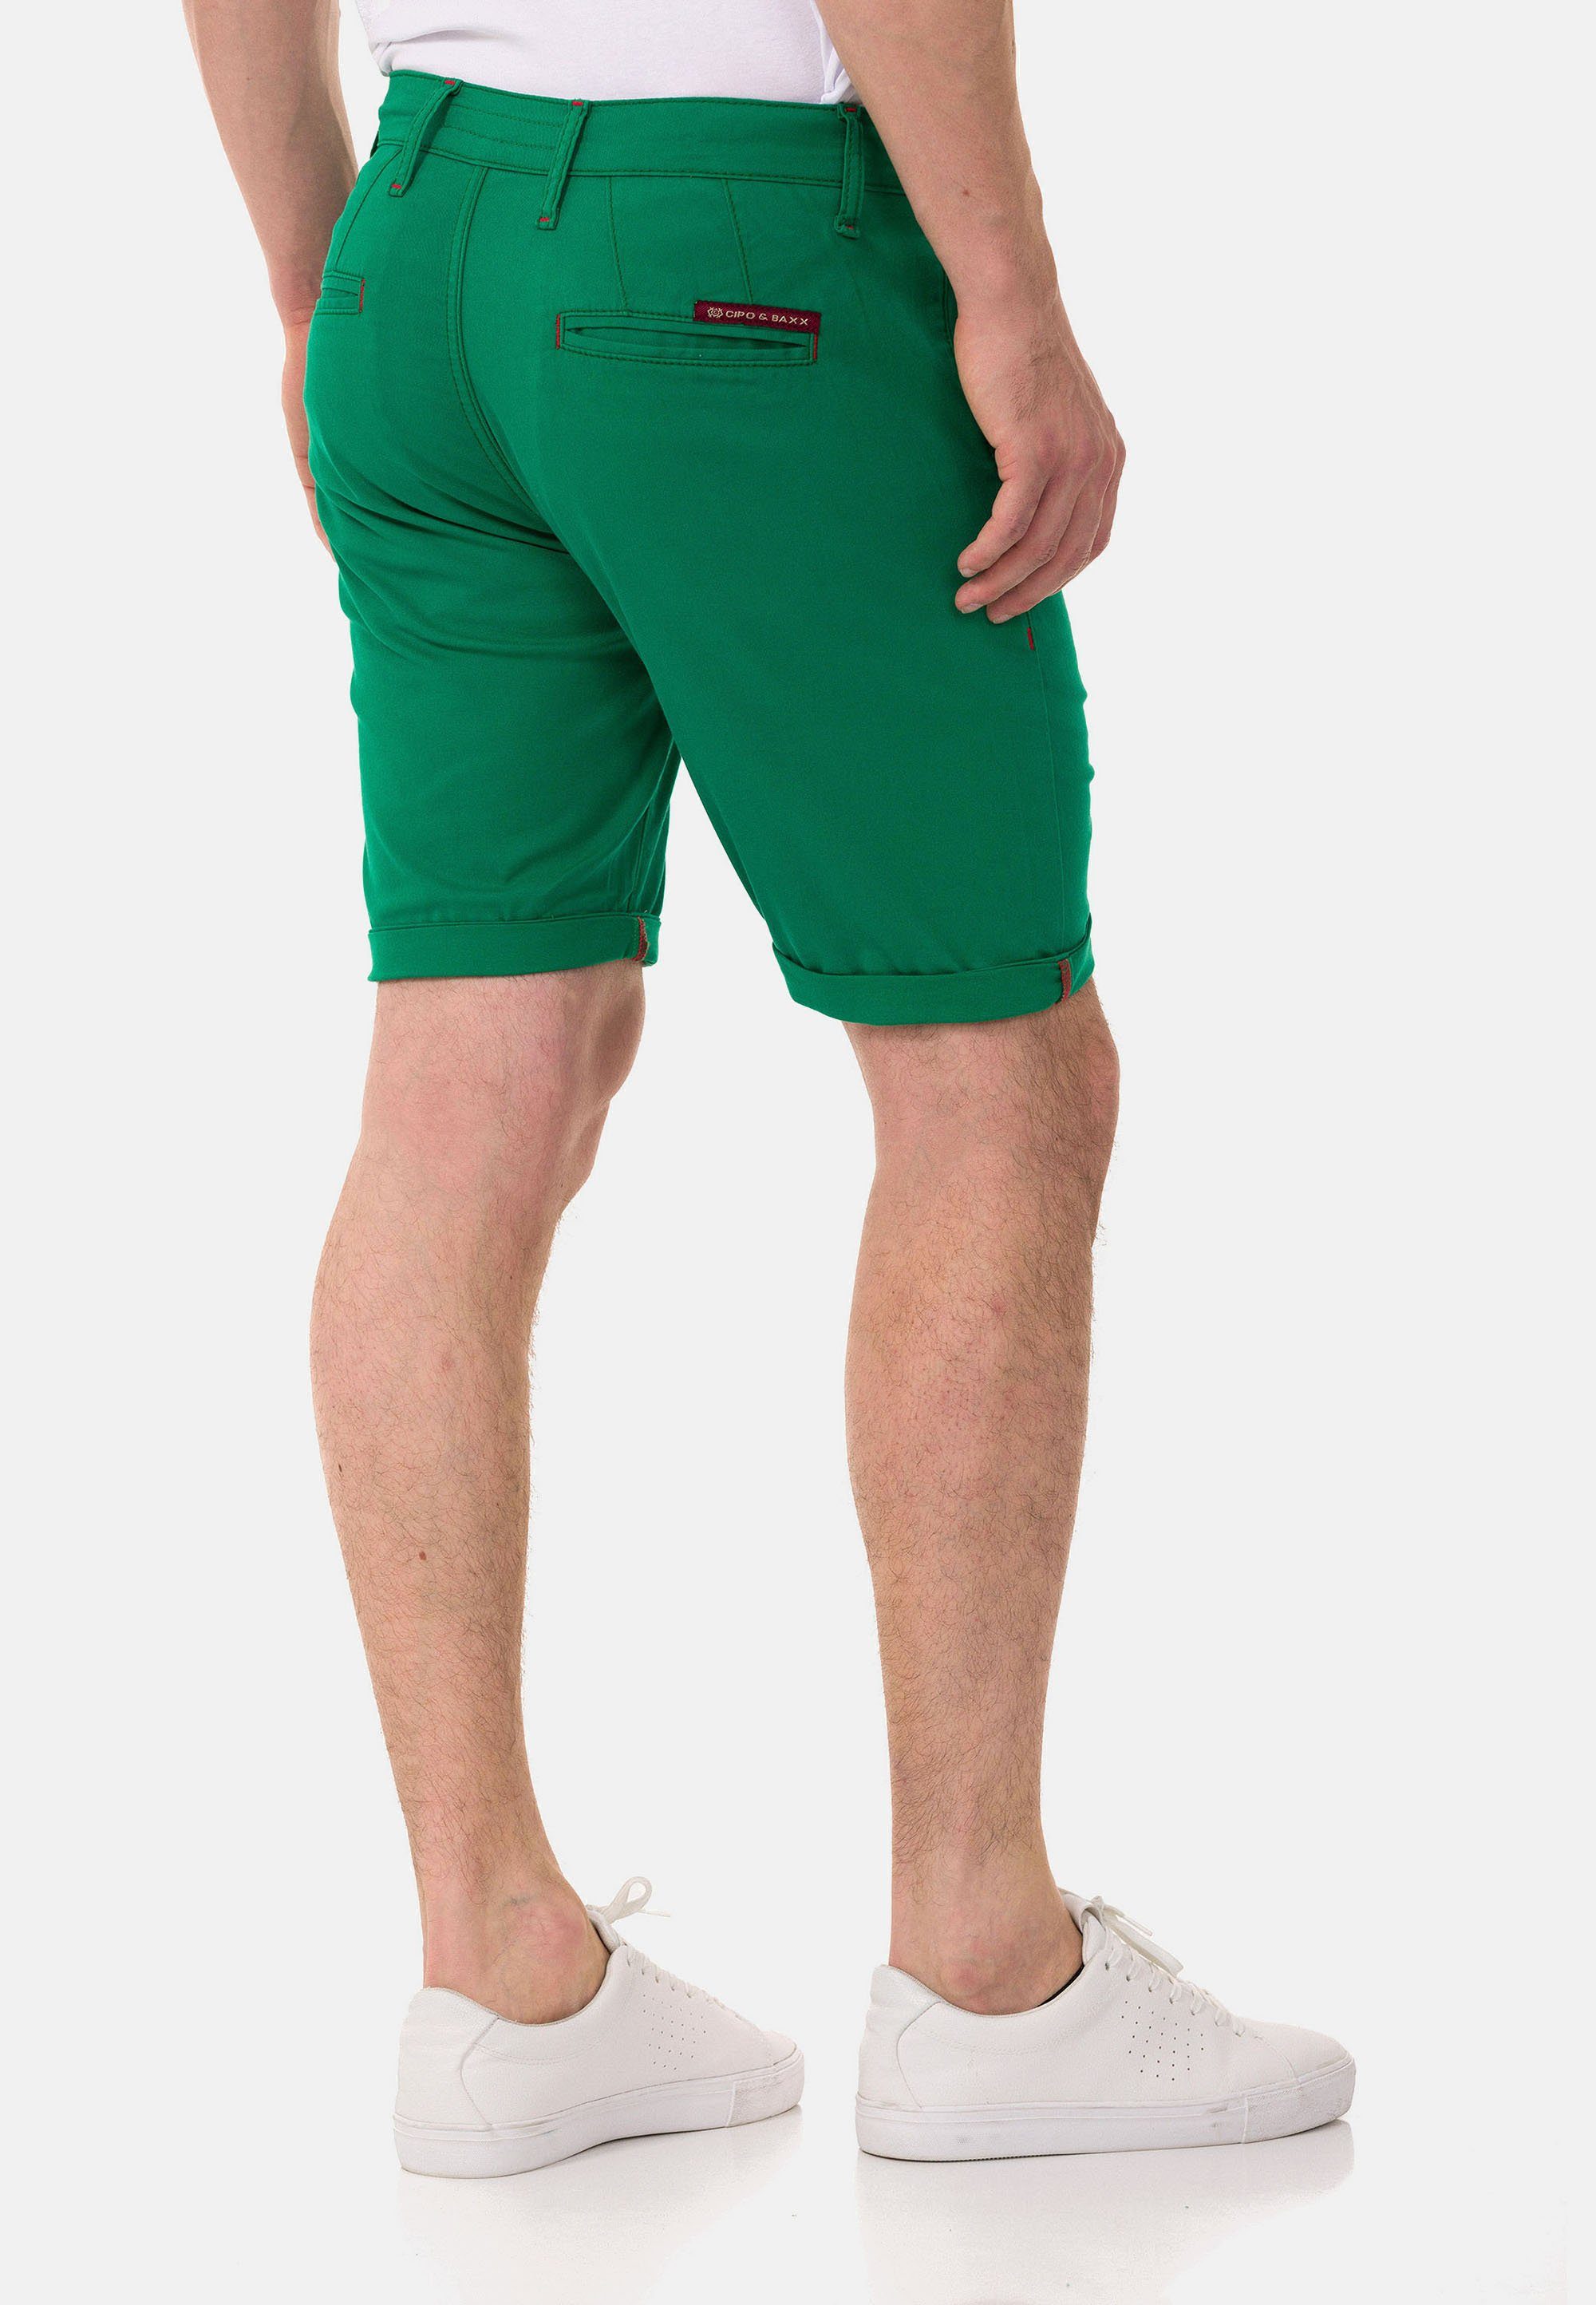 & im Shorts Look Baxx Cipo grün einfarbigen